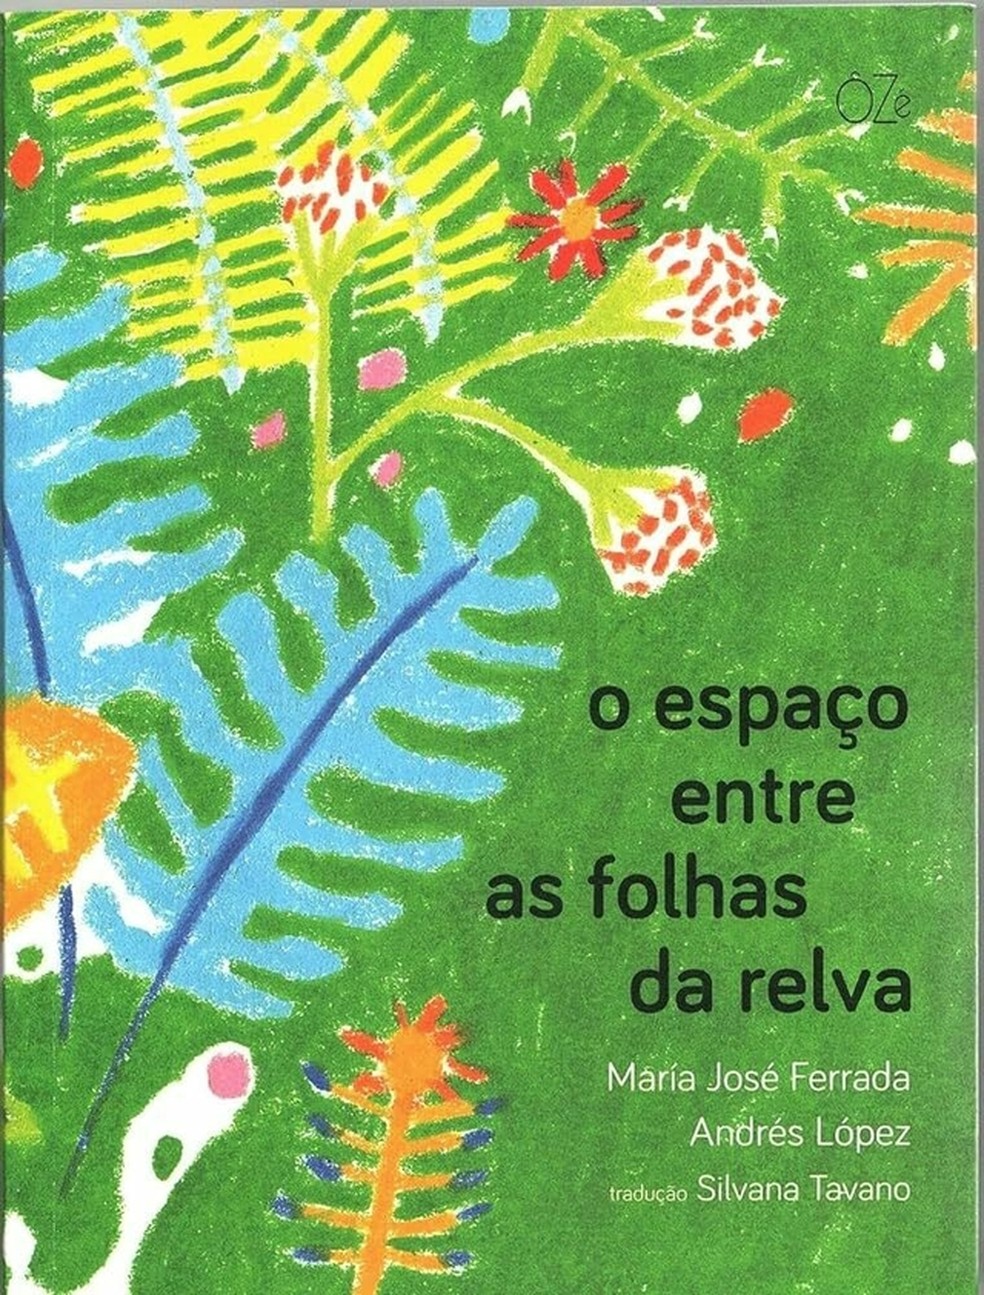 Livro infantil O espaço entre as folhas da relva, de María José Ferrada — Foto: Divulgação